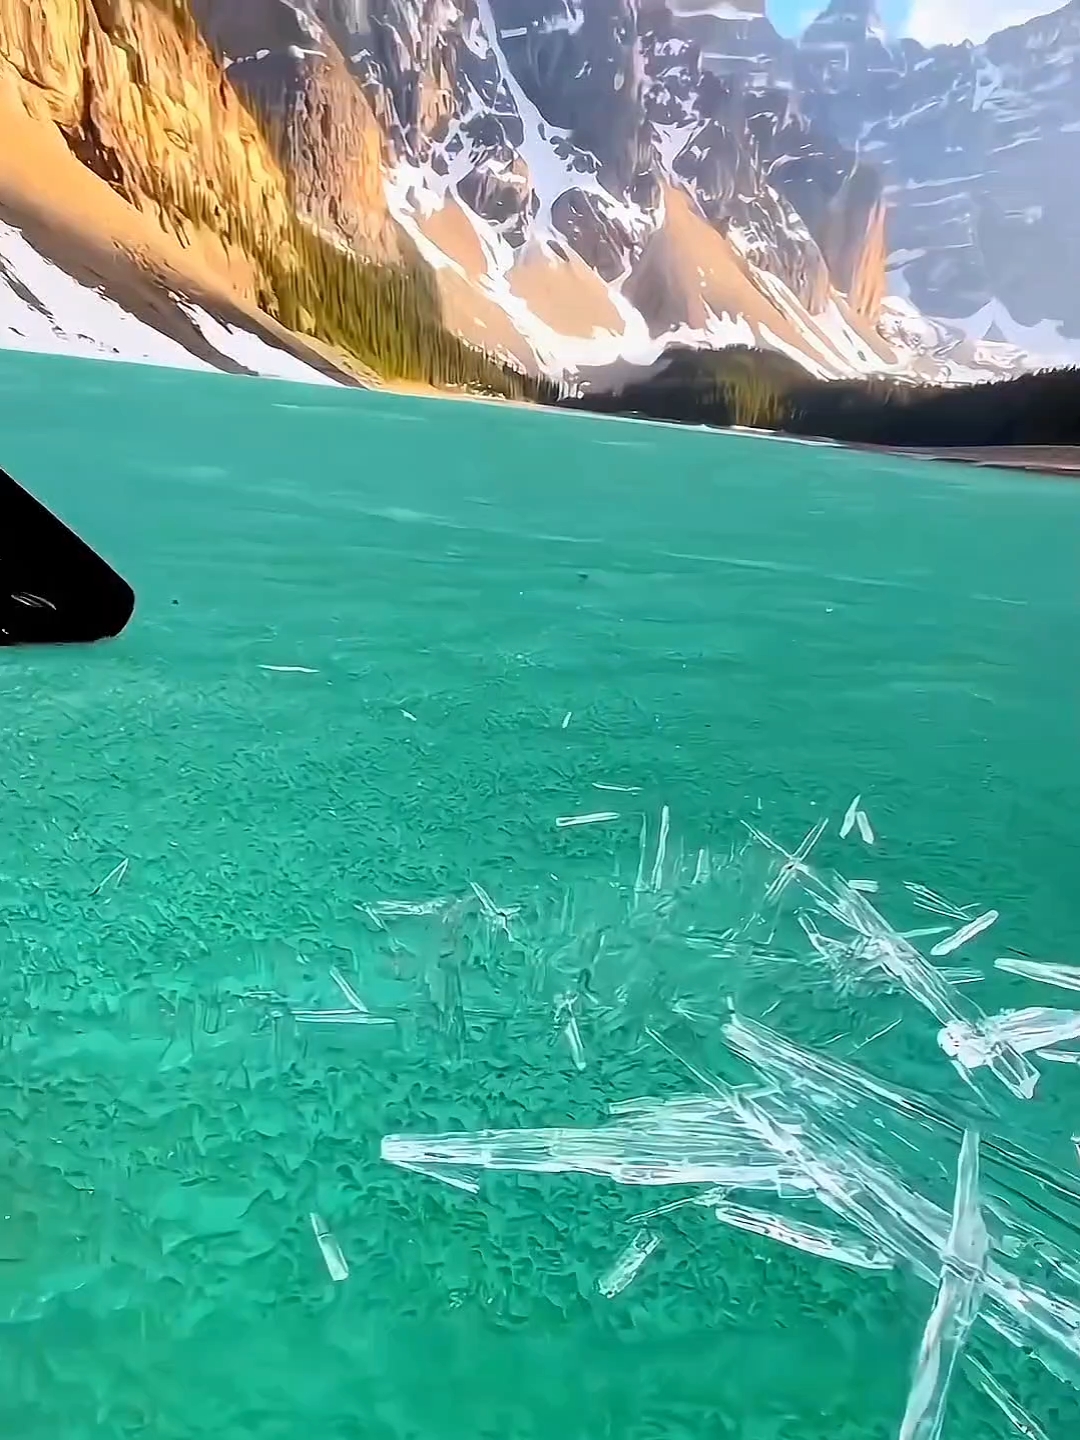 加拿大班夫国家公园“晶莹剔透的冰开始融化了太美了